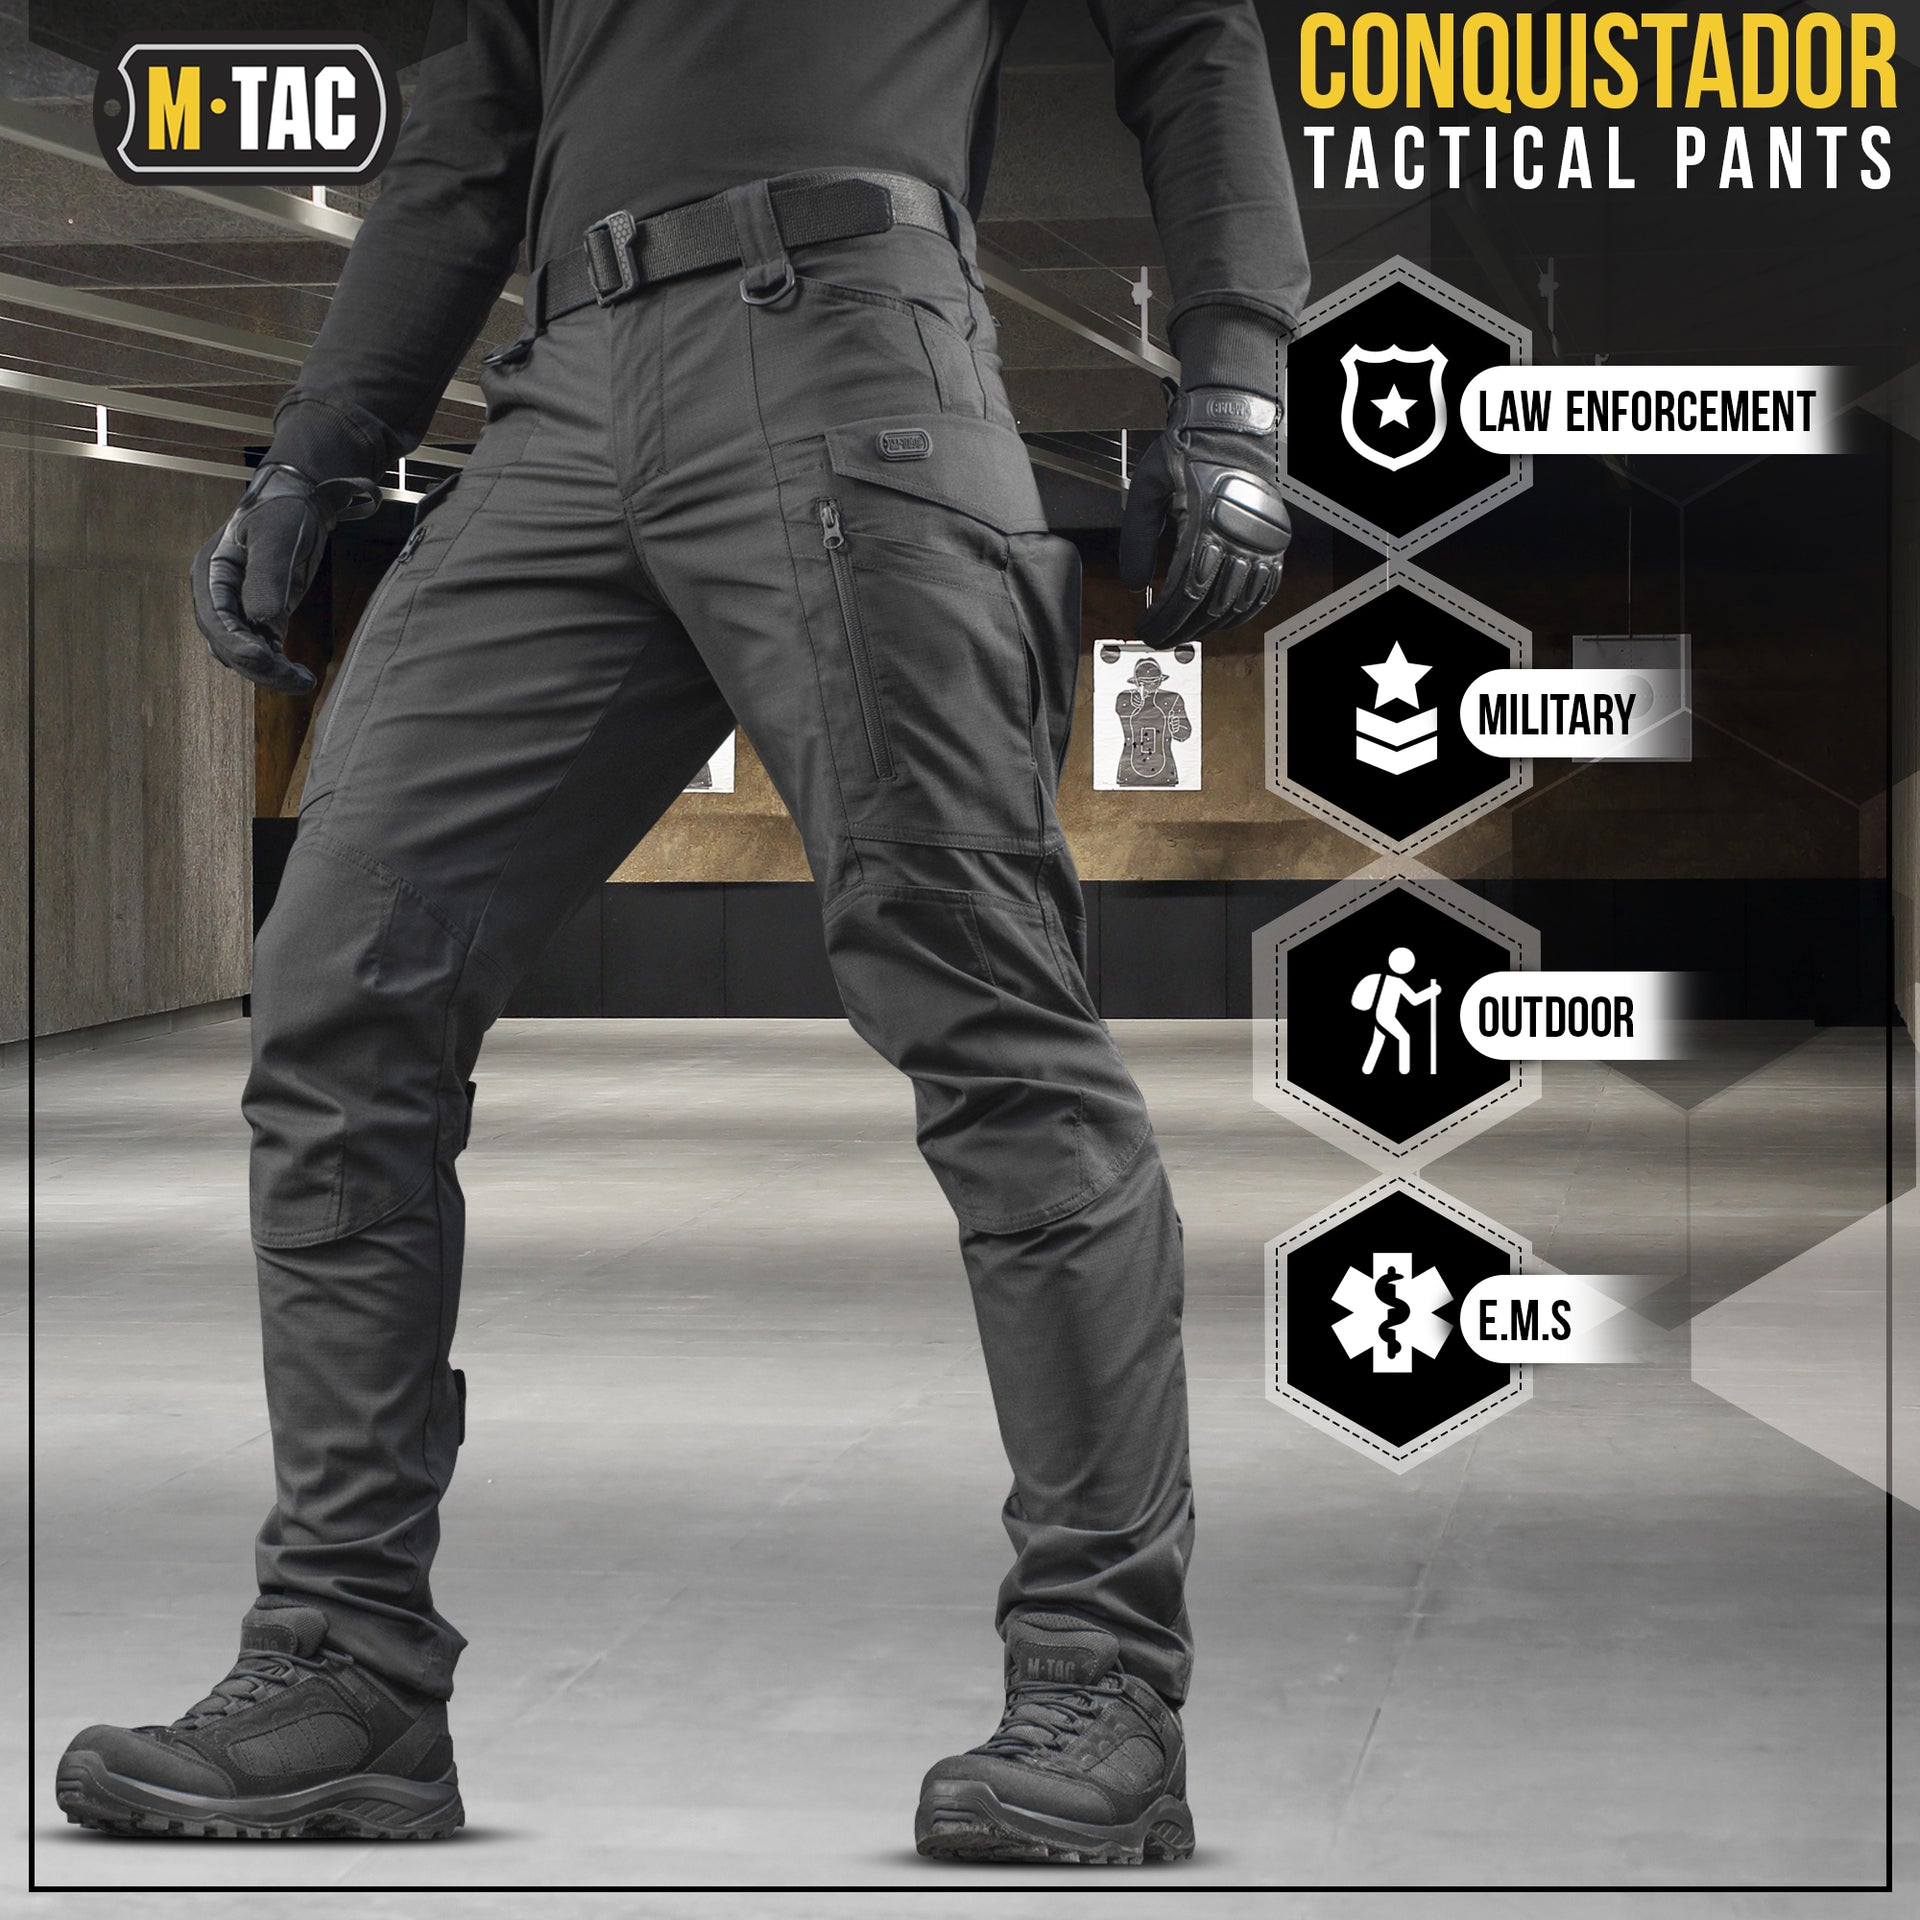 M-Tac tactical pants Conquistador Gen I Flex – M-TAC